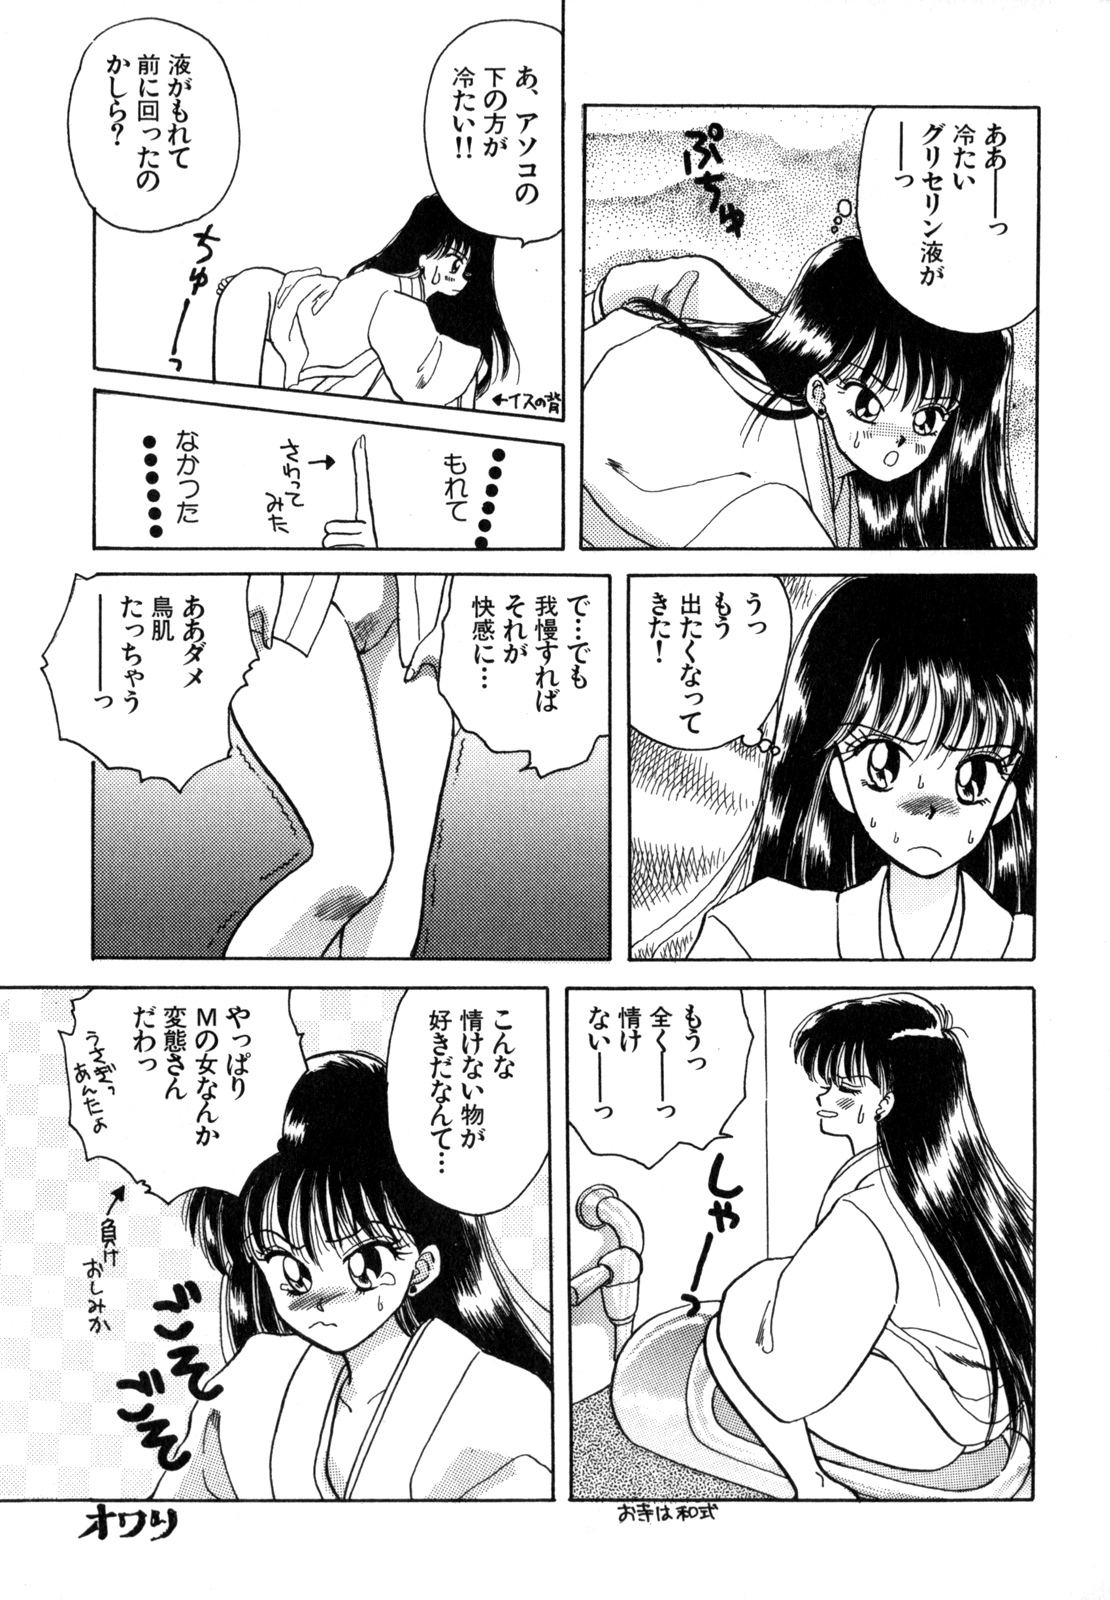 [Anthology] Lunatic Party 4 (Bishoujo Senshi Sailor Moon) page 18 full